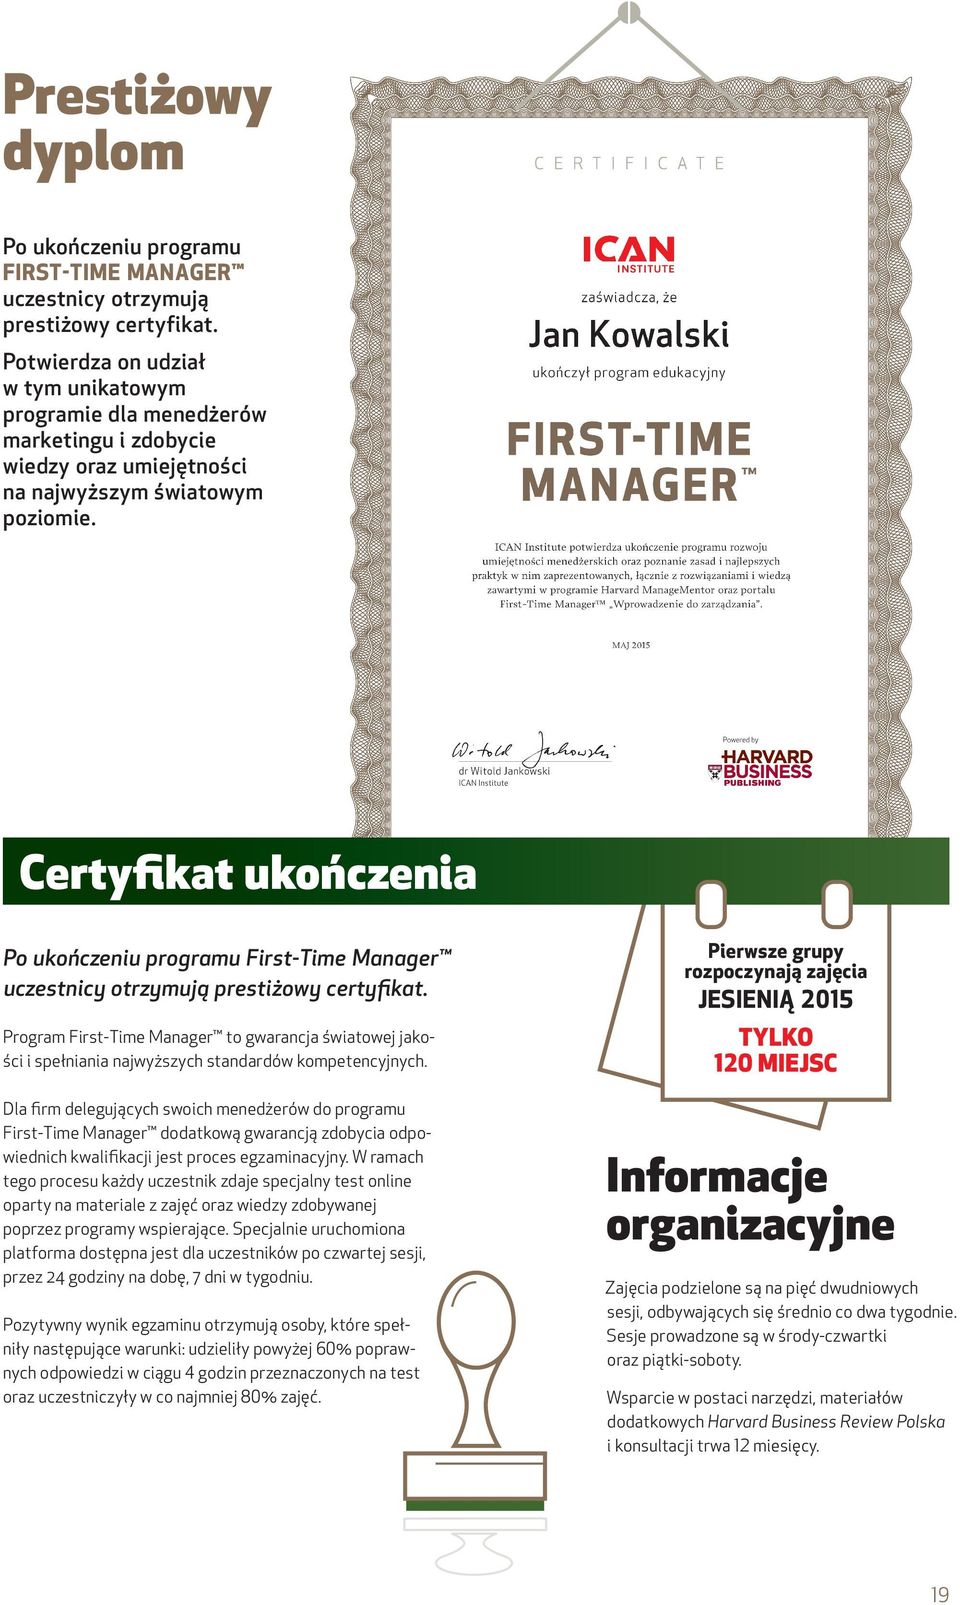 Certyfikat ukończenia Po ukończeniu programu First-Time Manager uczestnicy otrzymują prestiżowy certyfikat.